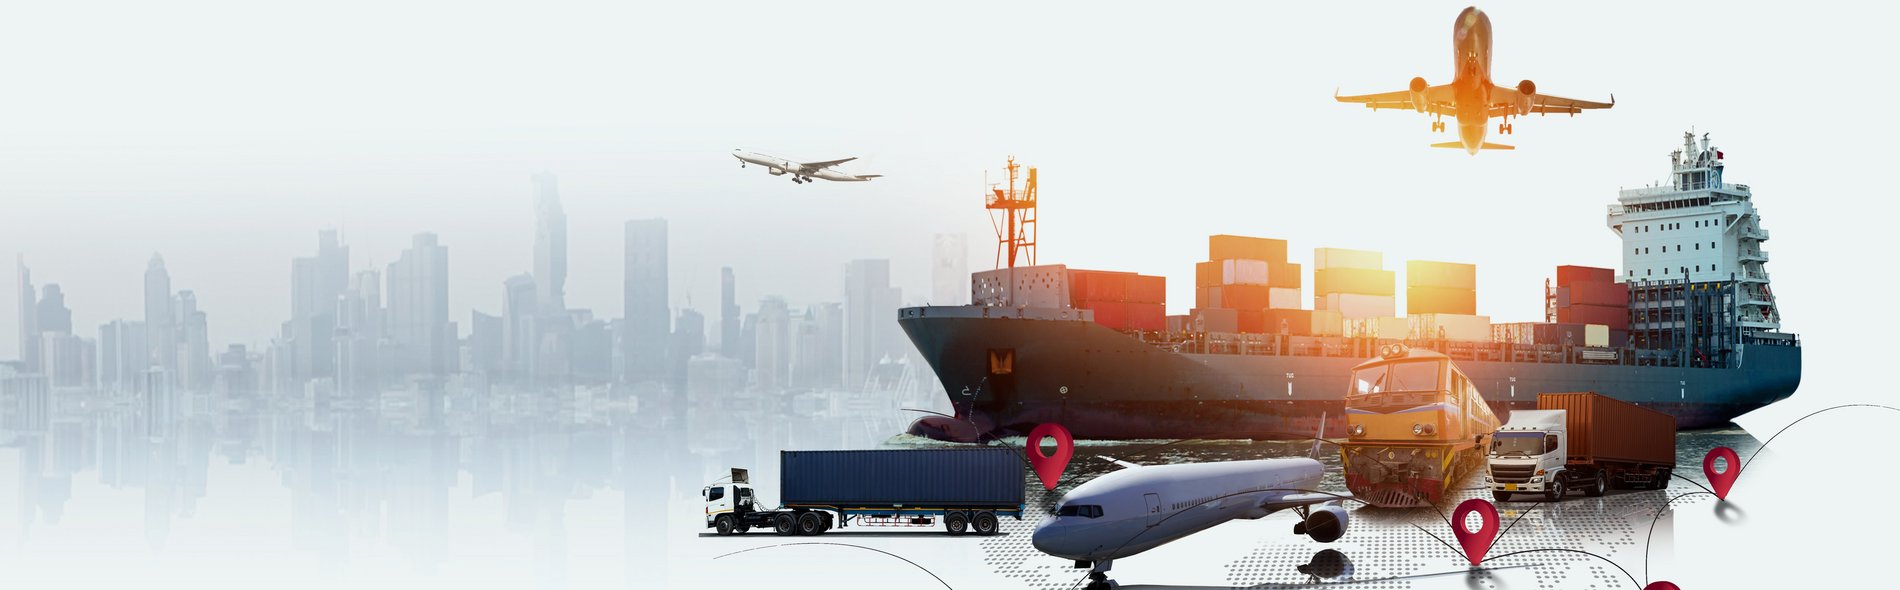 Fotomontage von verschiedenen Transportmitteln wie Schiff, Flugzeug, Lkw oder Bahn.